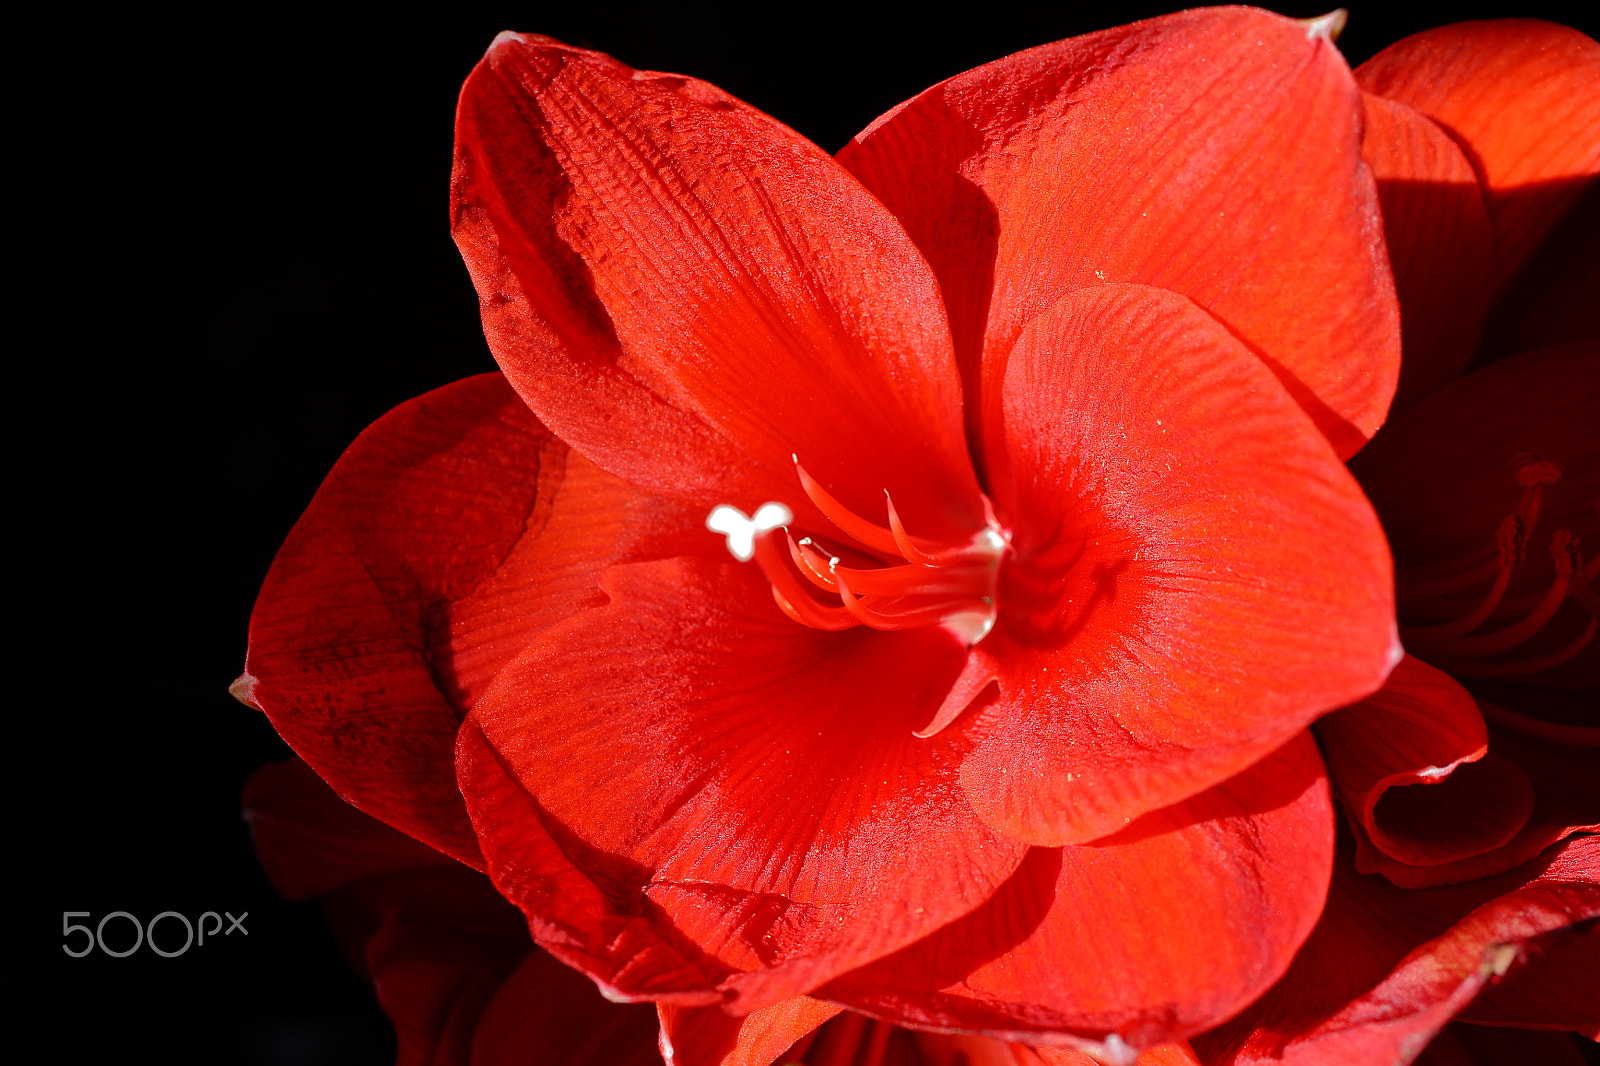 Sigma 50mm f/2.8 EX sample photo. Amaryllis rouge photography